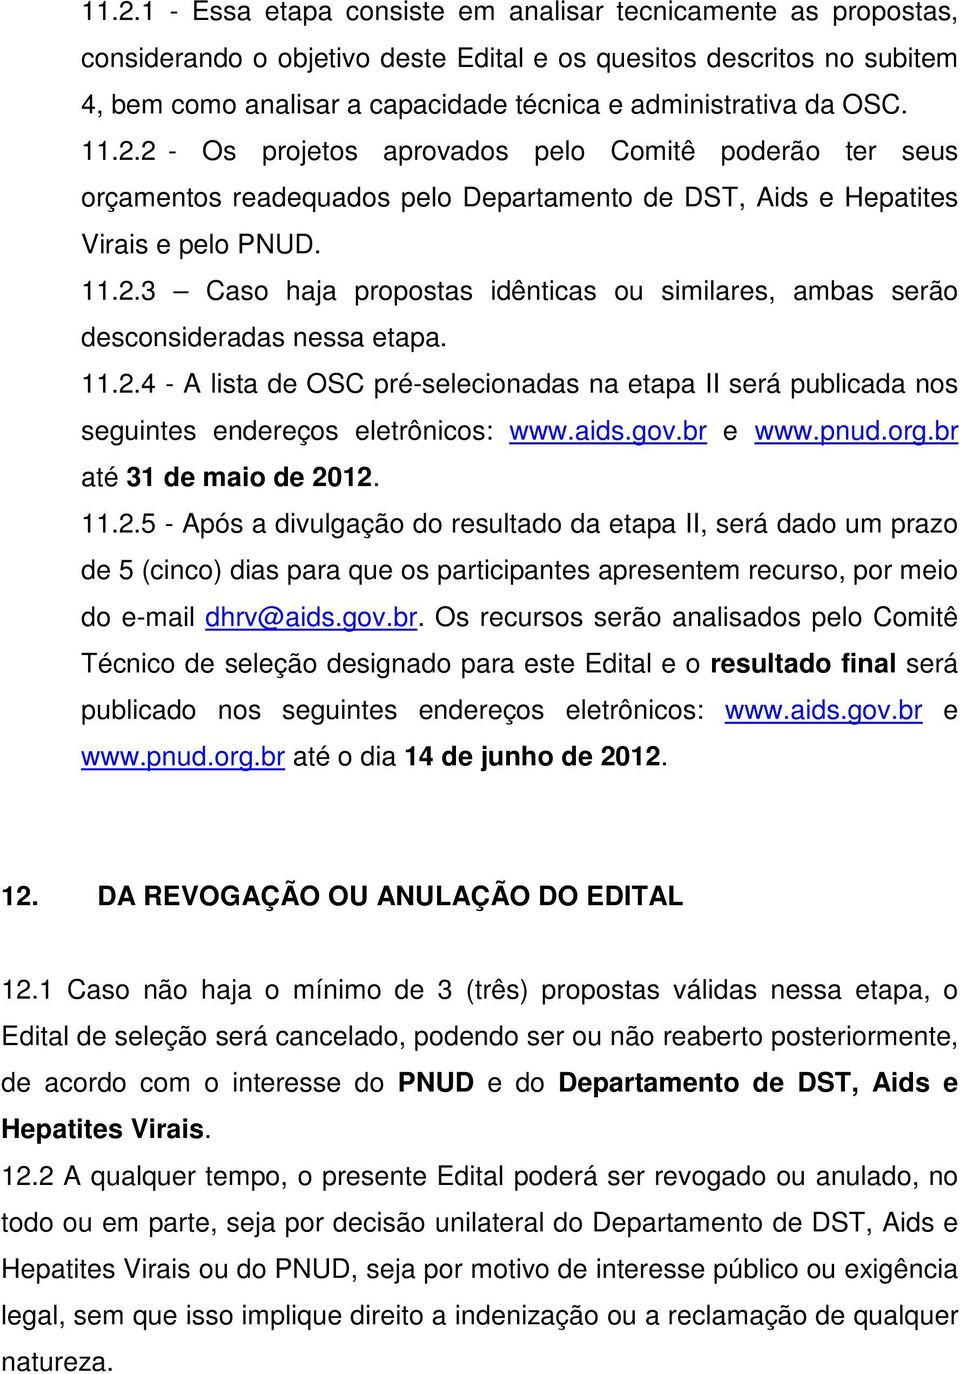 11.2.4 - A lista de OSC pré-selecionadas na etapa II será publicada nos seguintes endereços eletrônicos: www.aids.gov.br e www.pnud.org.br até 31 de maio de 2012. 11.2.5 - Após a divulgação do resultado da etapa II, será dado um prazo de 5 (cinco) dias para que os participantes apresentem recurso, por meio do e-mail dhrv@aids.